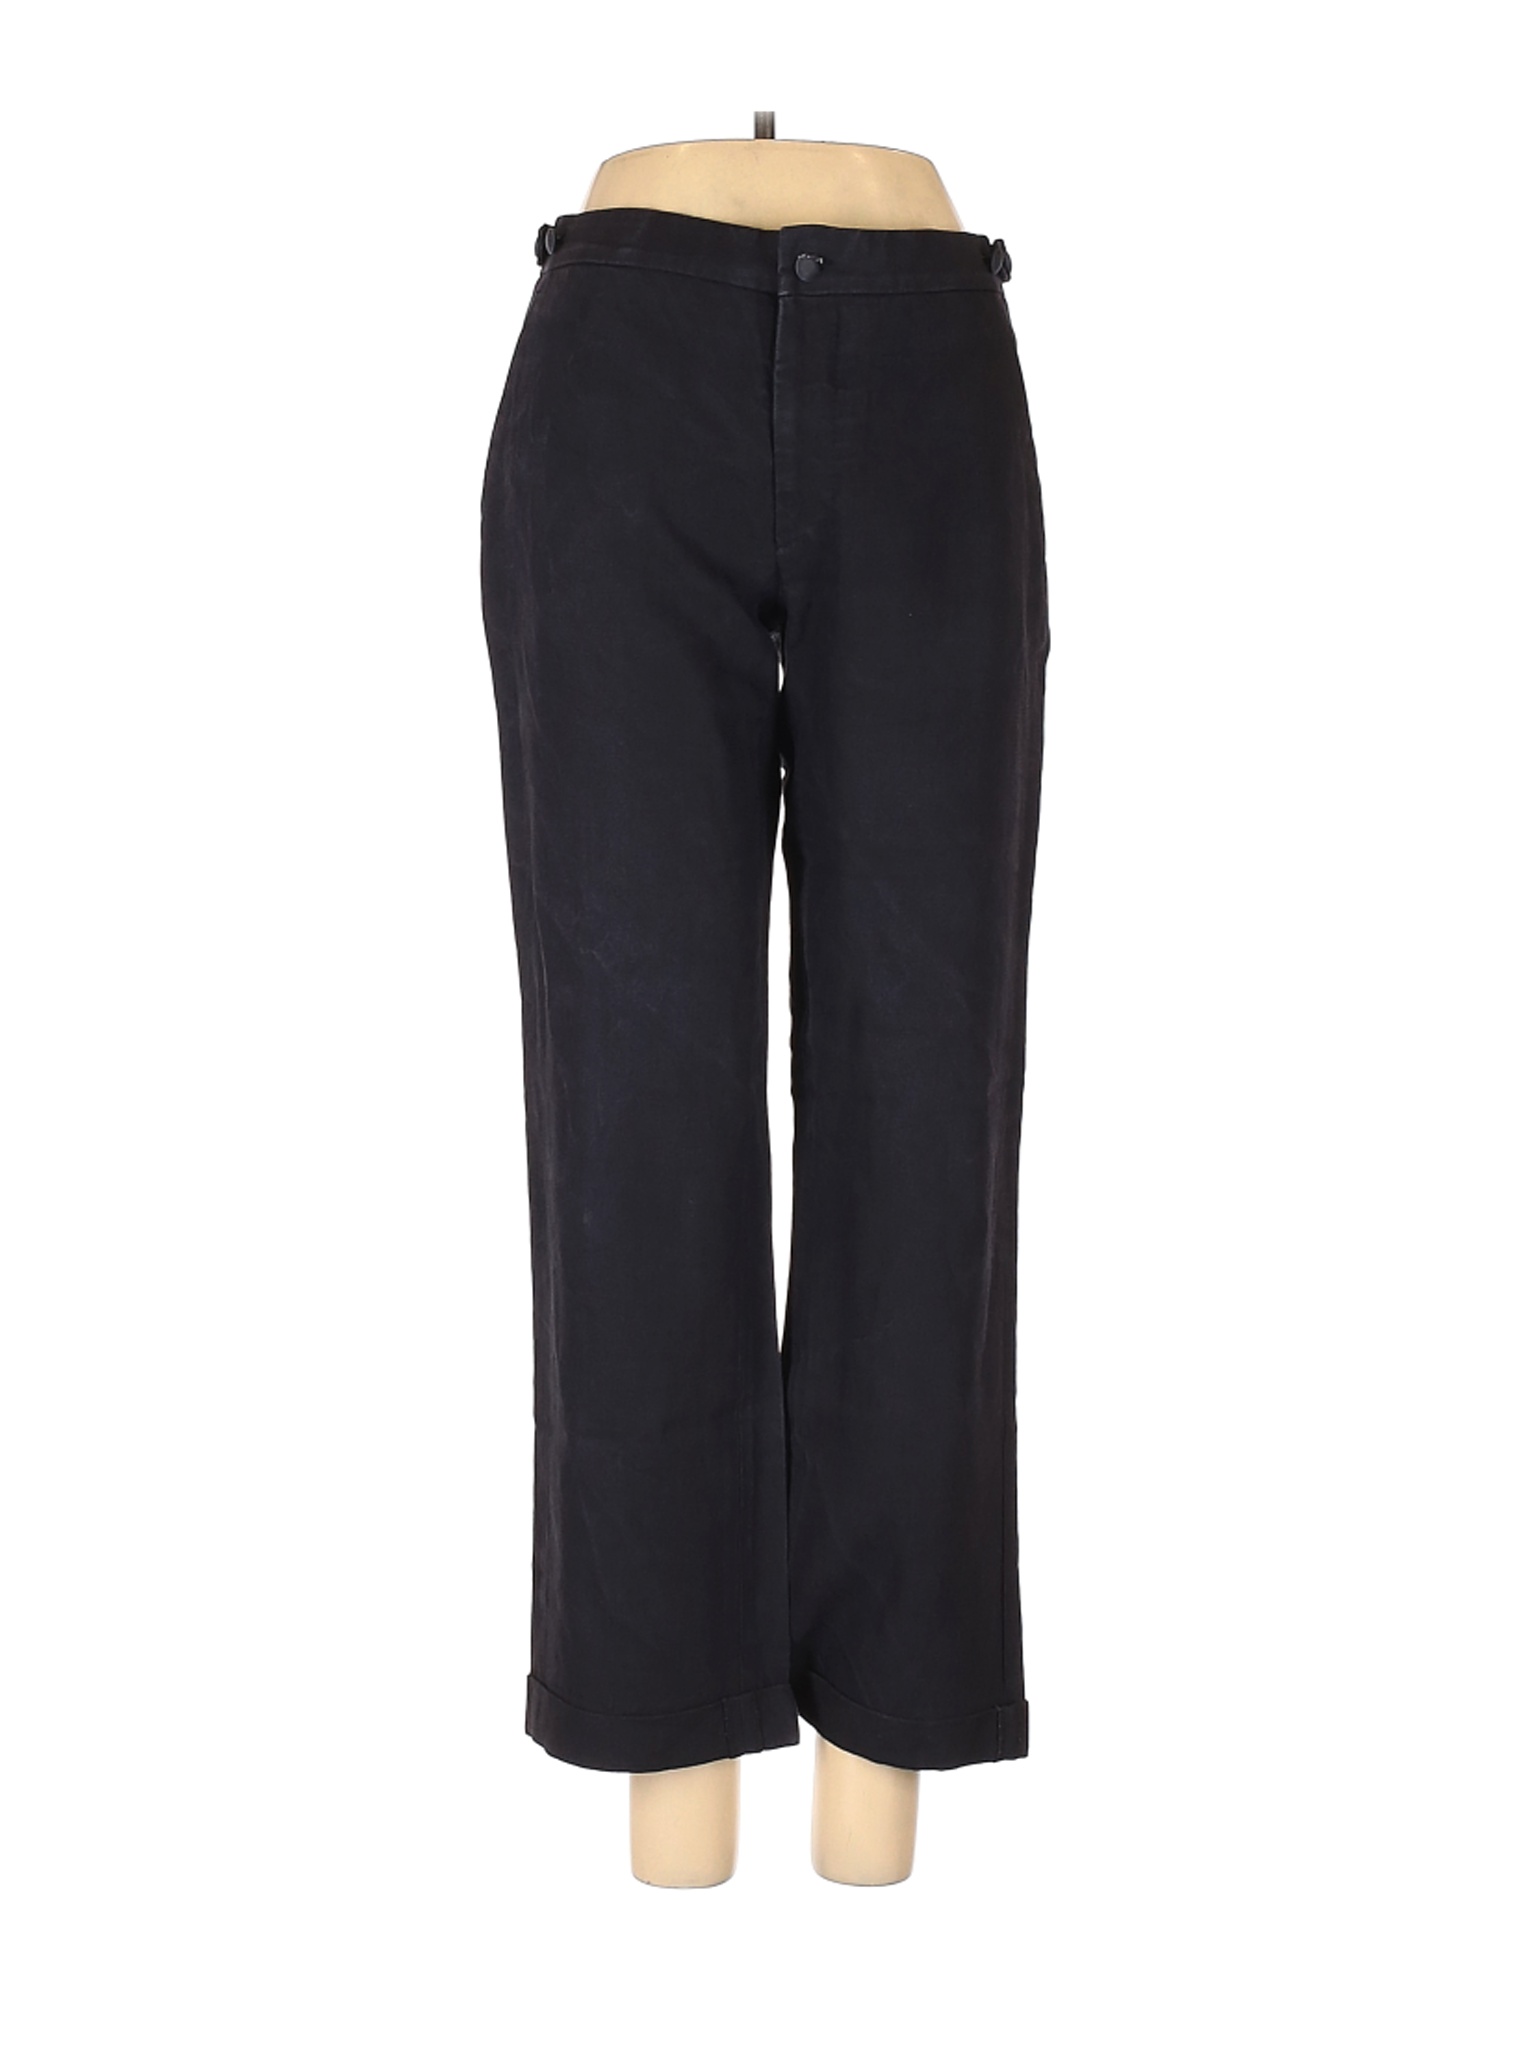 Margaret Howell Women Black Linen Pants 6 | eBay